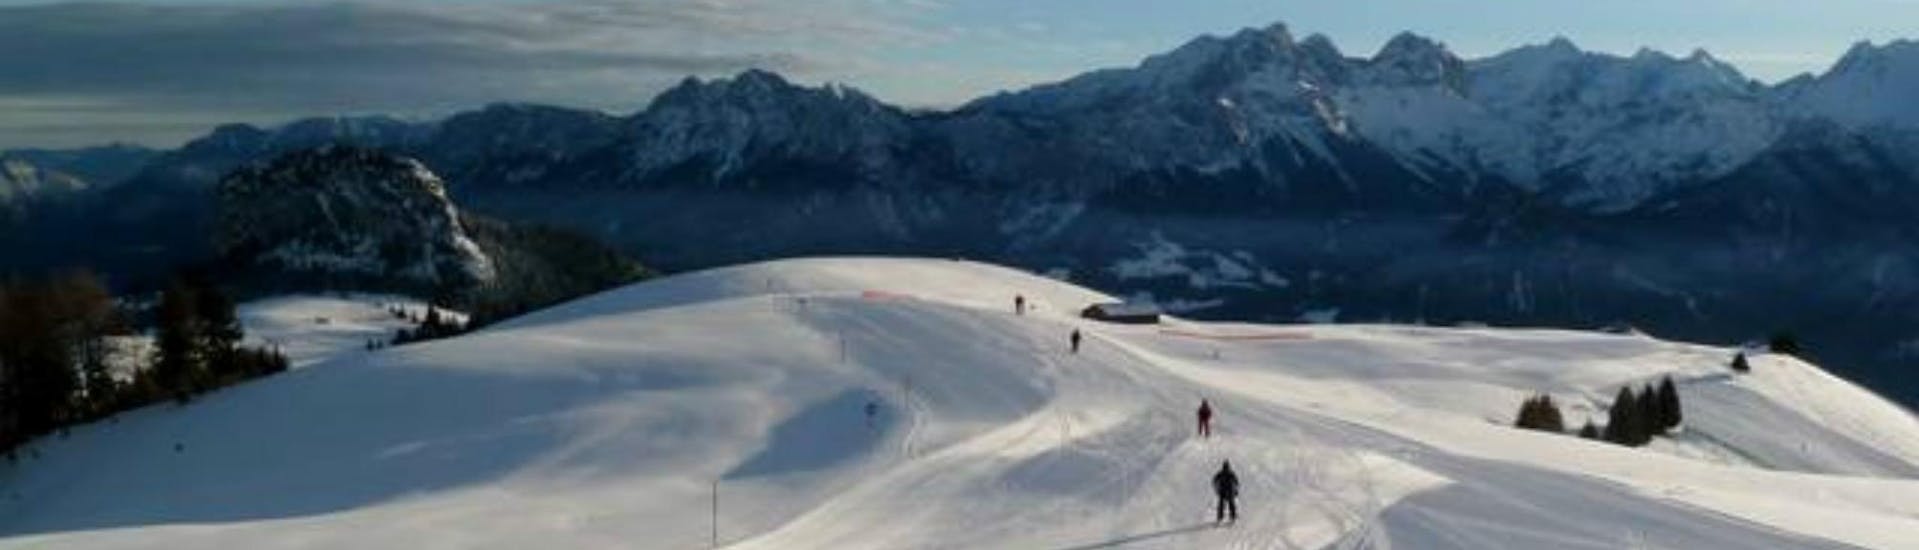 Tijdens een skiles met een skischool in Loser-Altaussee heb je een prachtig uitzicht op zonnige bergen.